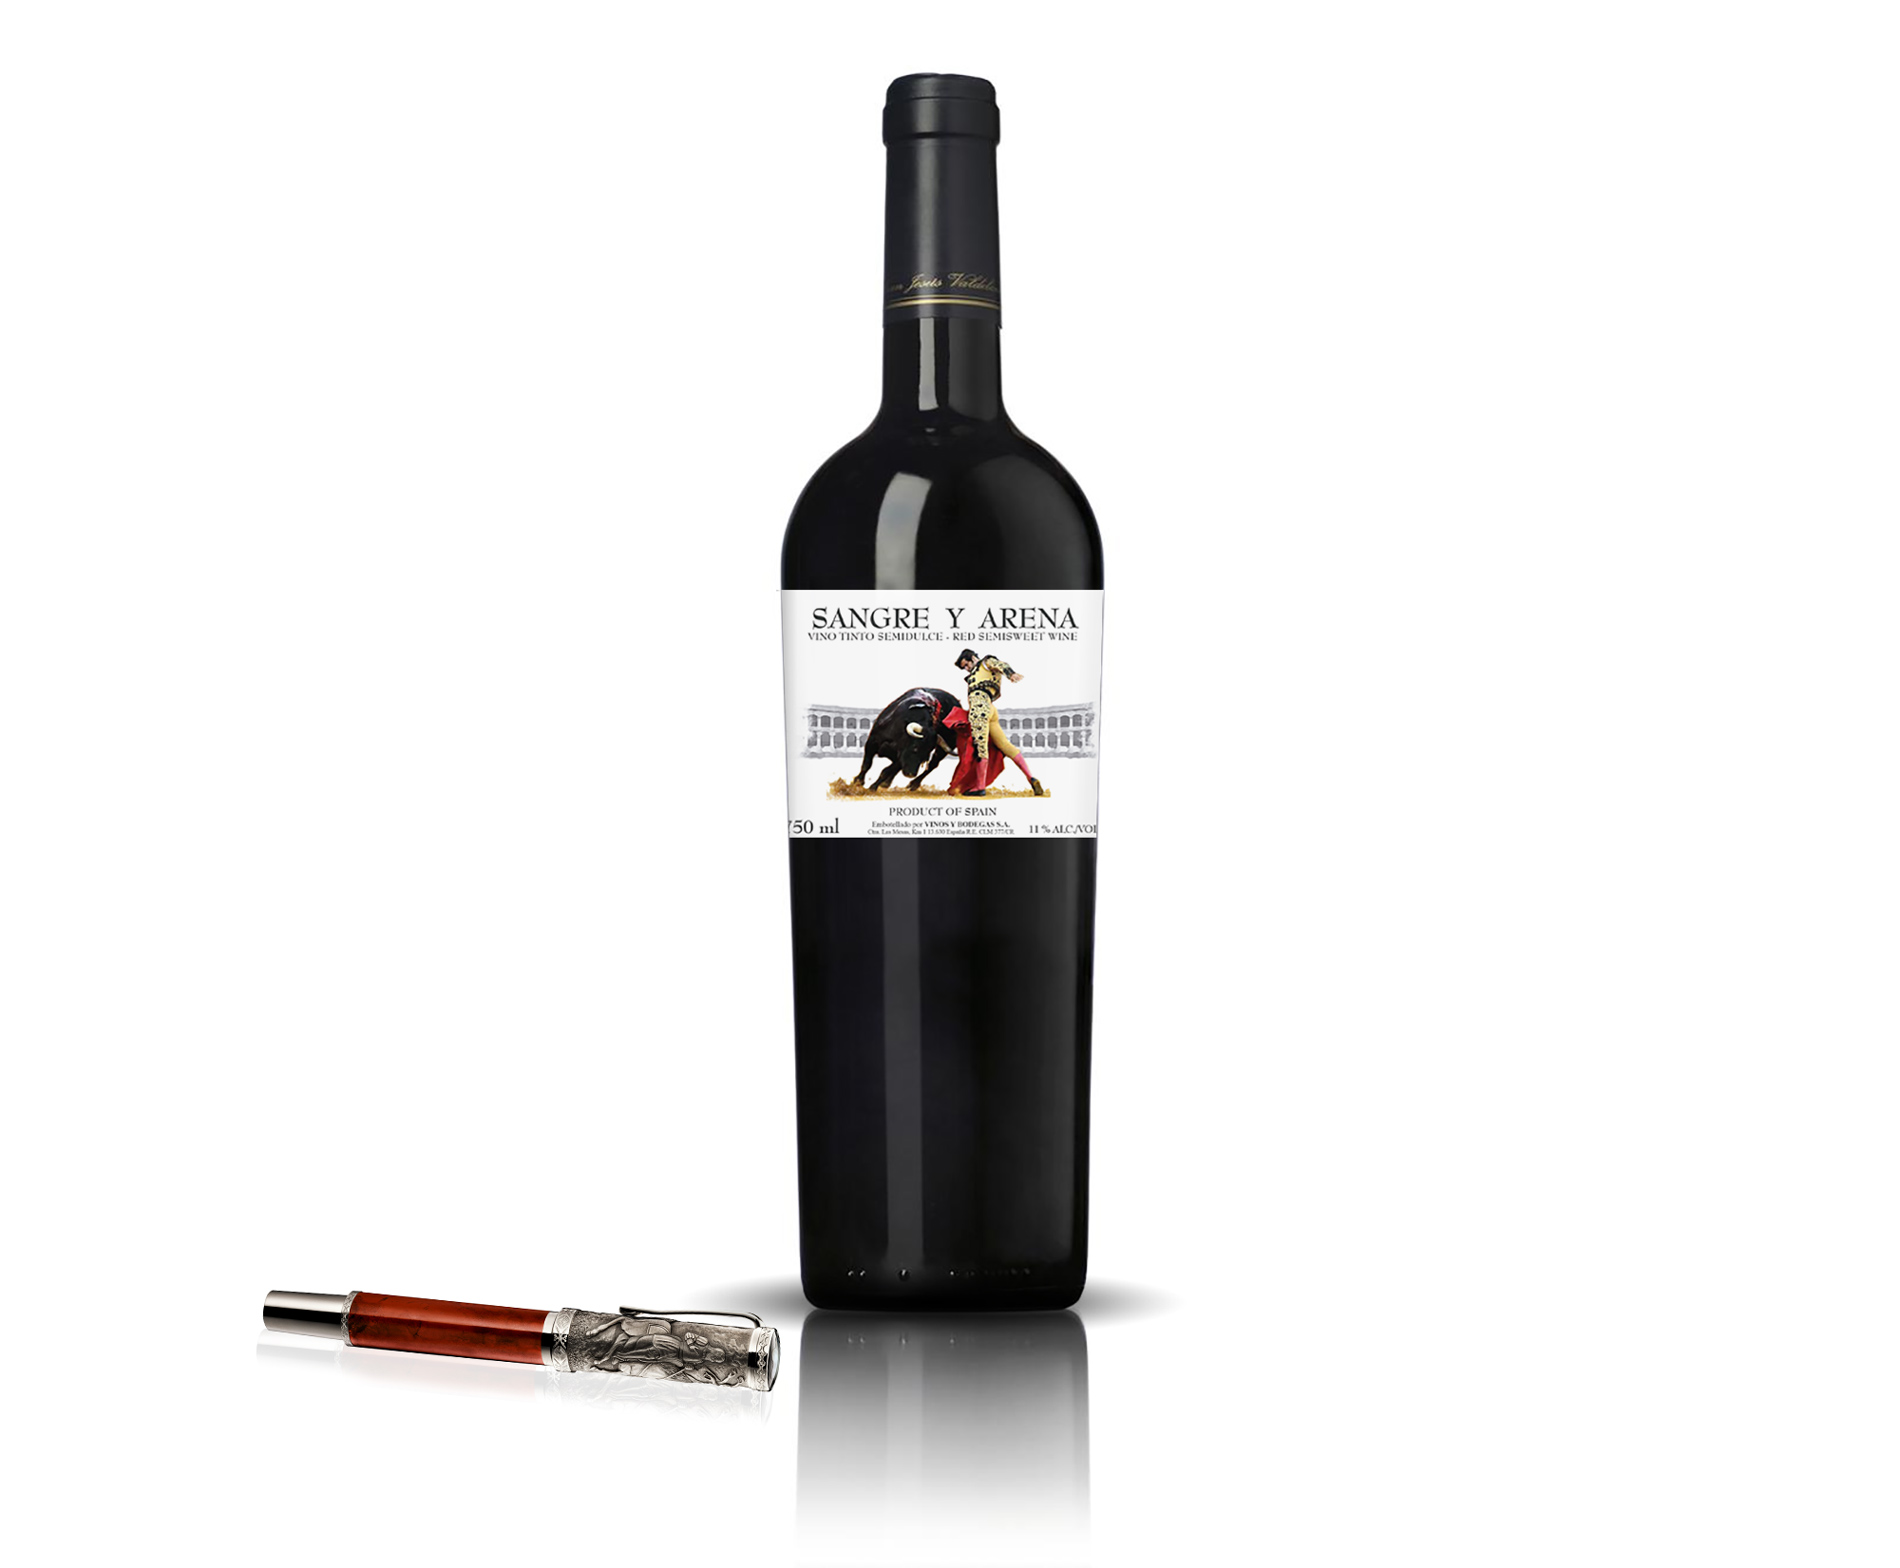 Diseño etiqueta para vino tinto y blanco para exportación SANGRE Y ARENA